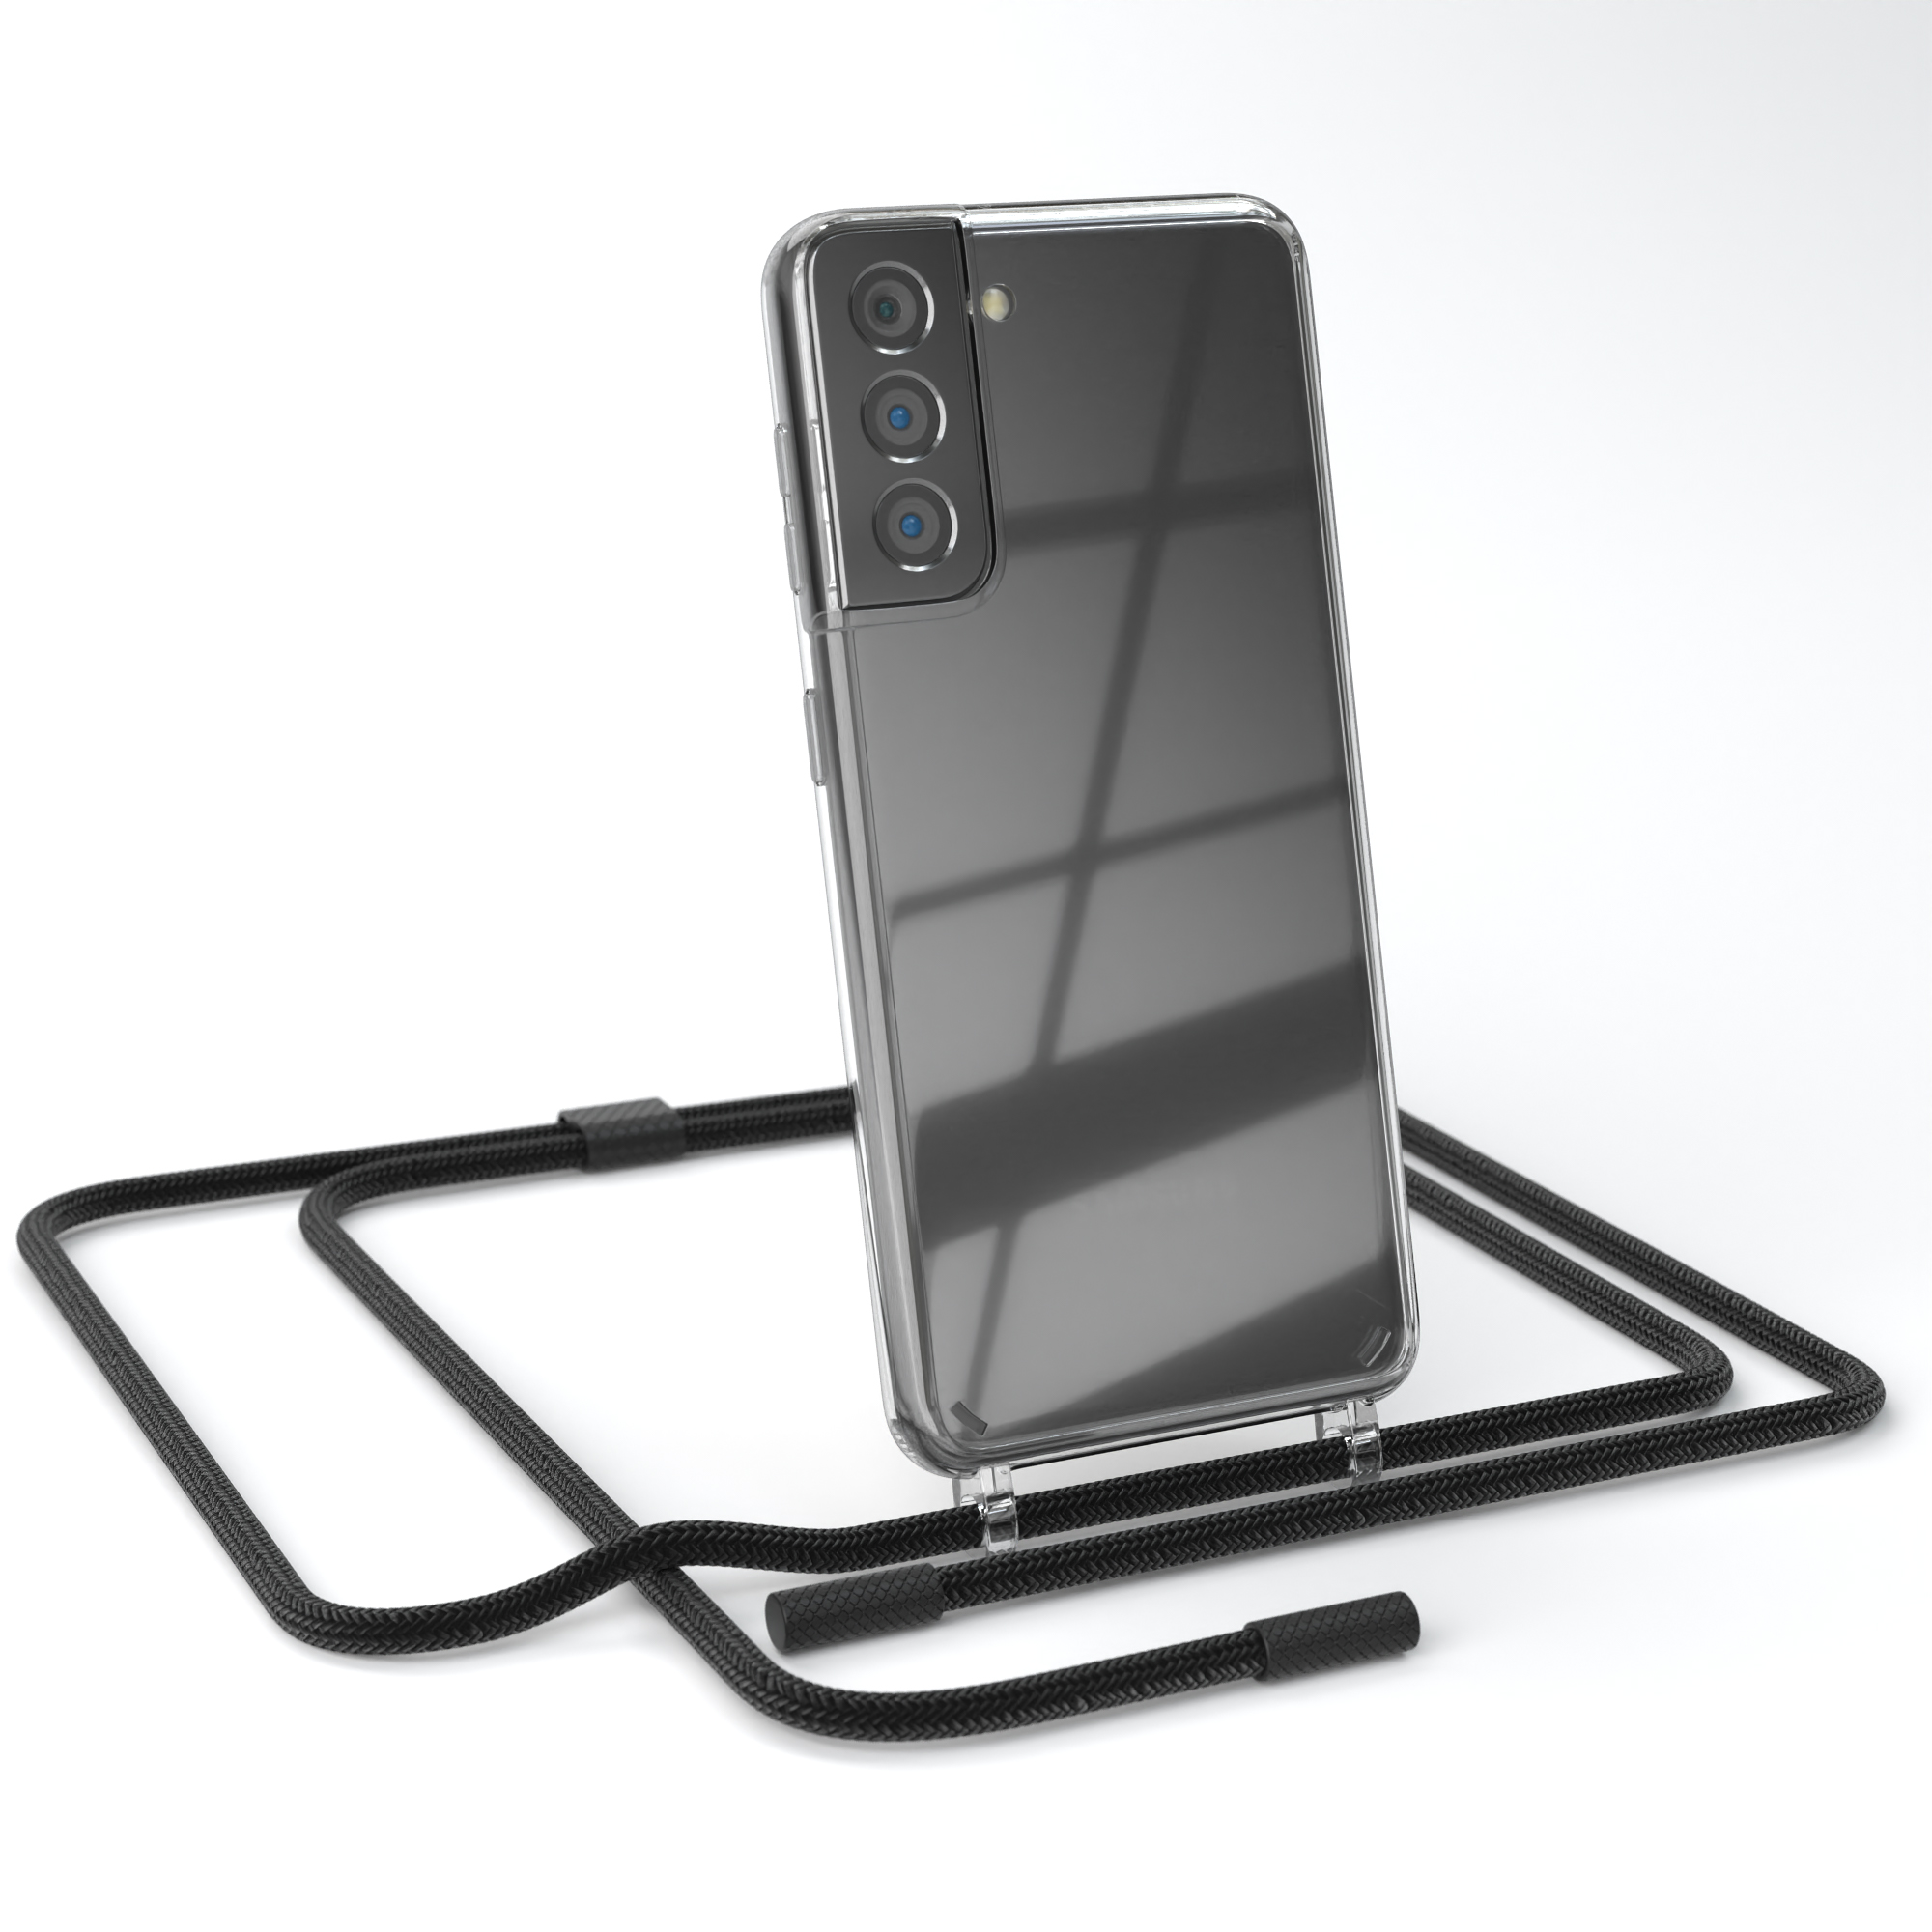 Galaxy Handyhülle Umhängetasche, EAZY Schwarz CASE mit S21 5G, runder Kette unifarbend, Samsung, Transparente